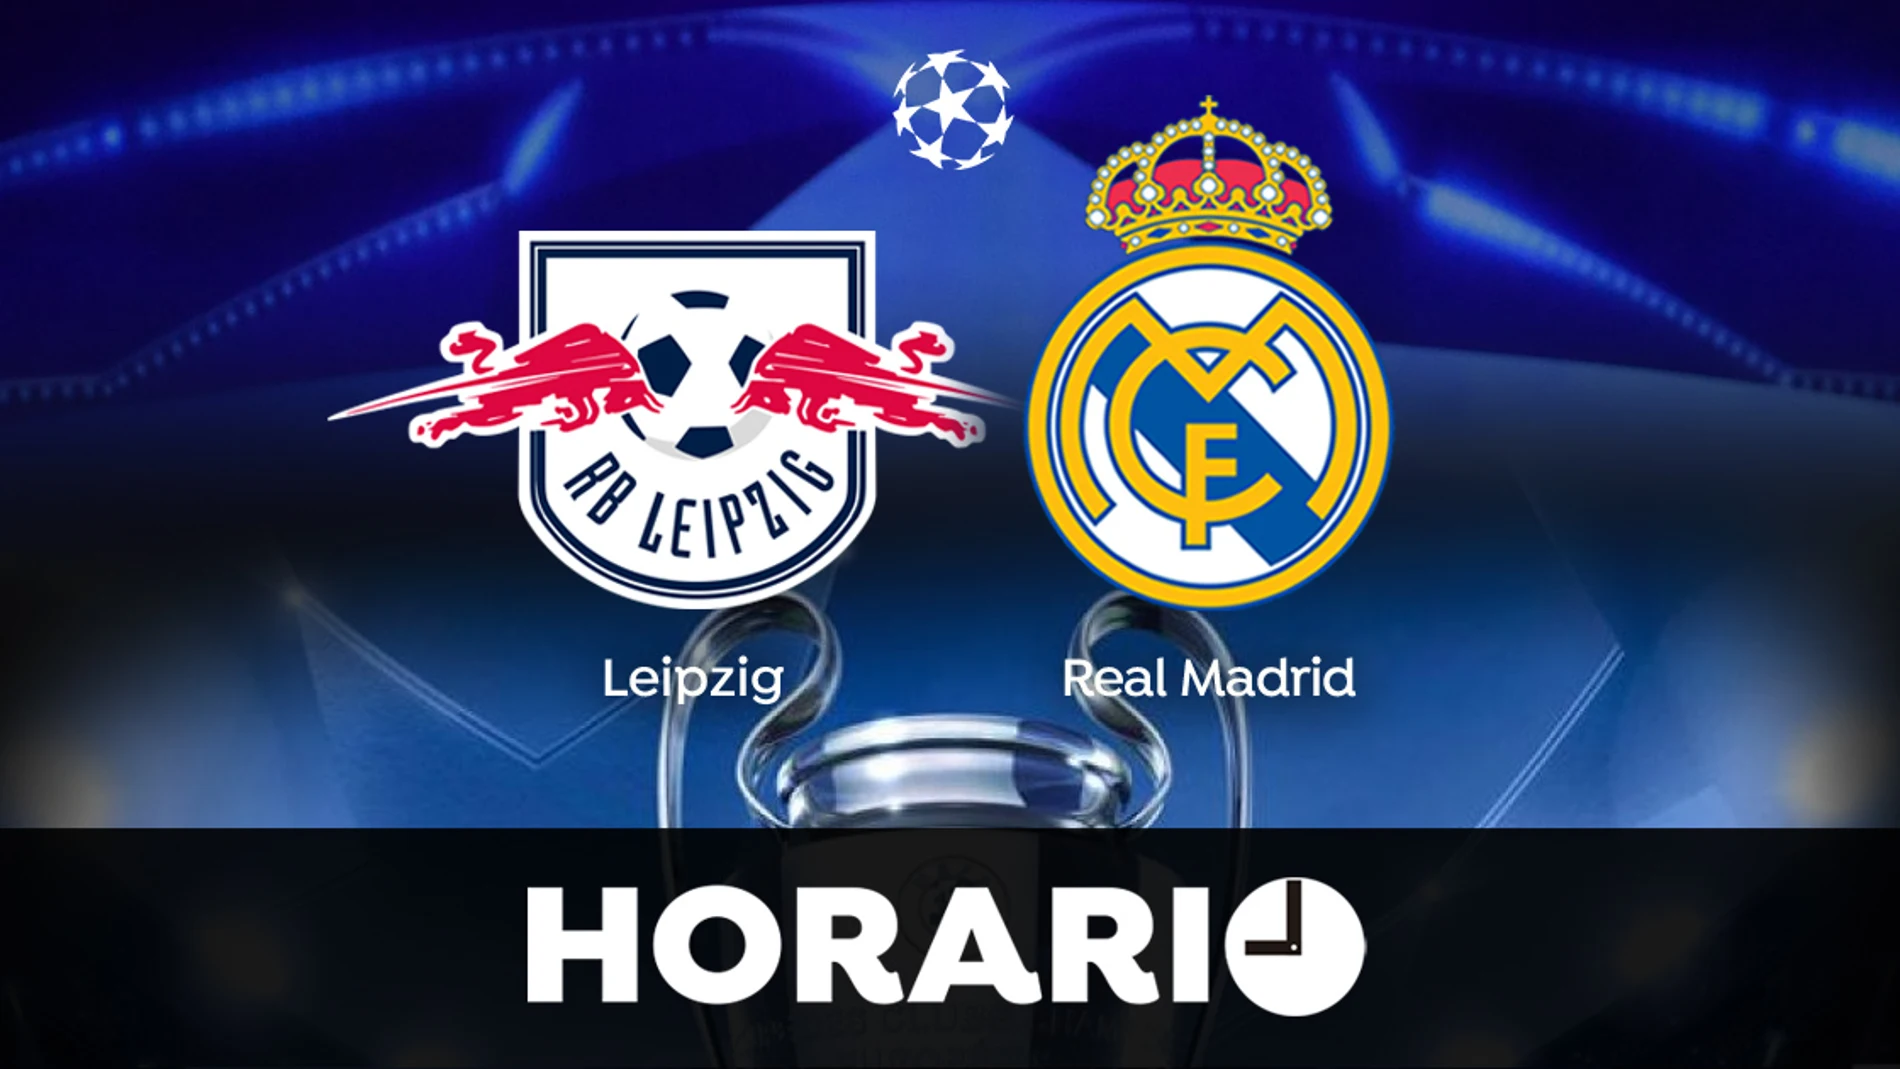 Leipzig - Real Madrid: Horario y dónde ver el partido de Champions League en directo